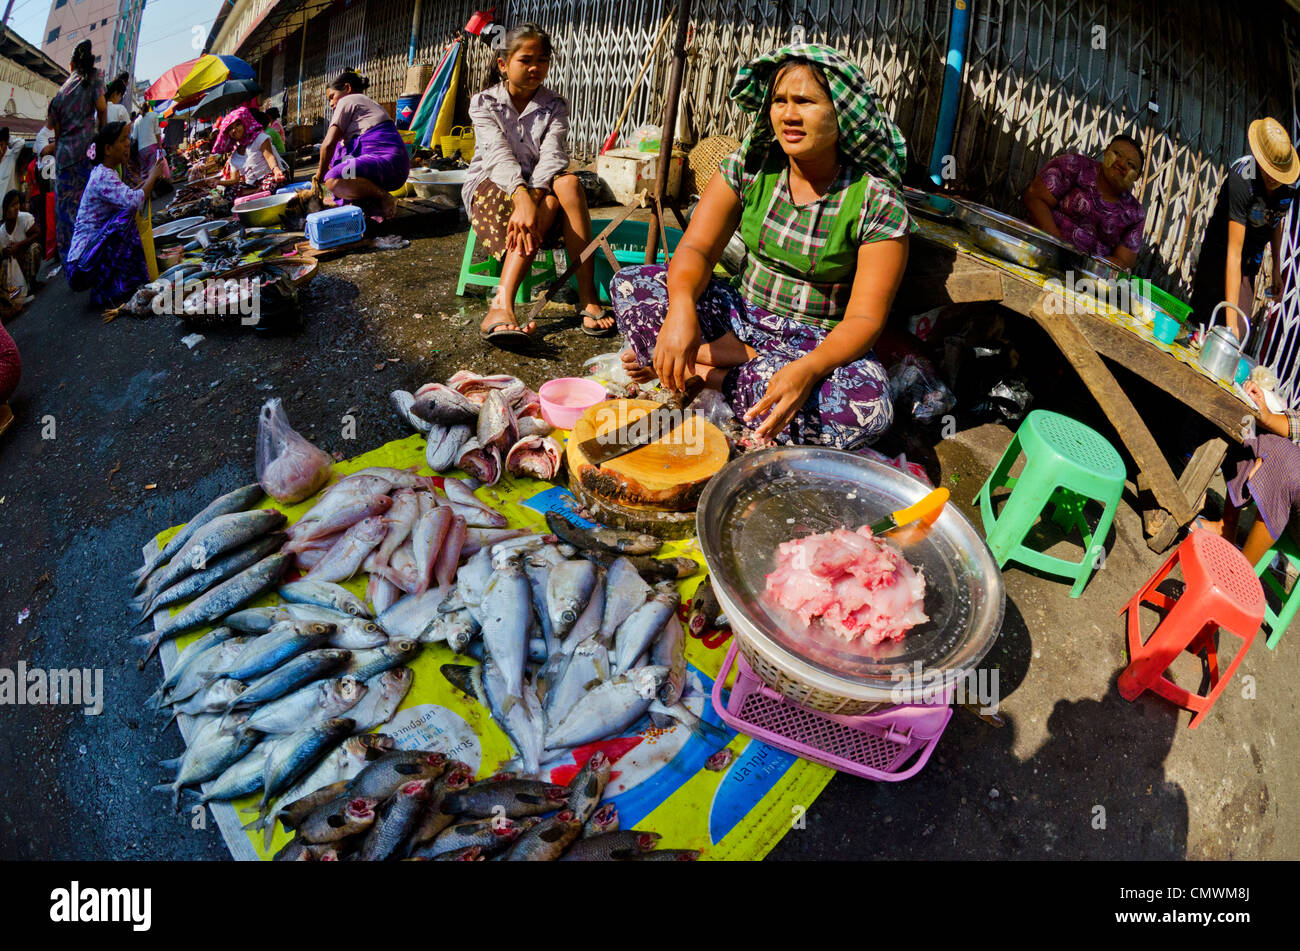 Beschäftigt Straßenmarkt in zentralen Yangon, Myanmar Stockfoto